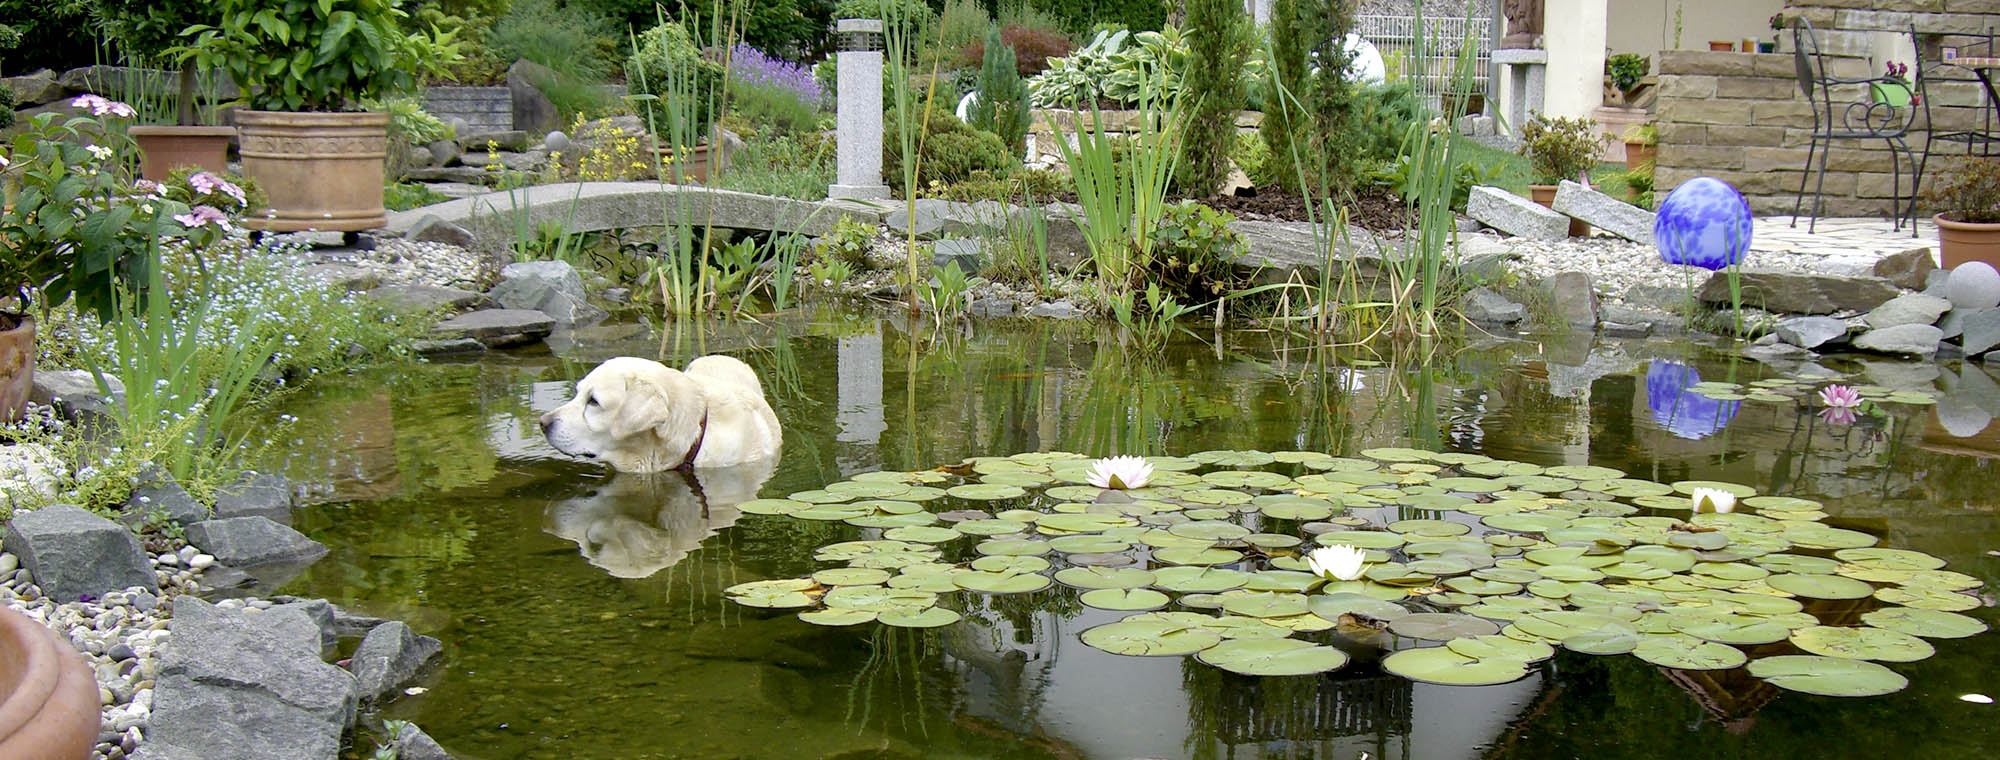 Teich, Wasser im Garten